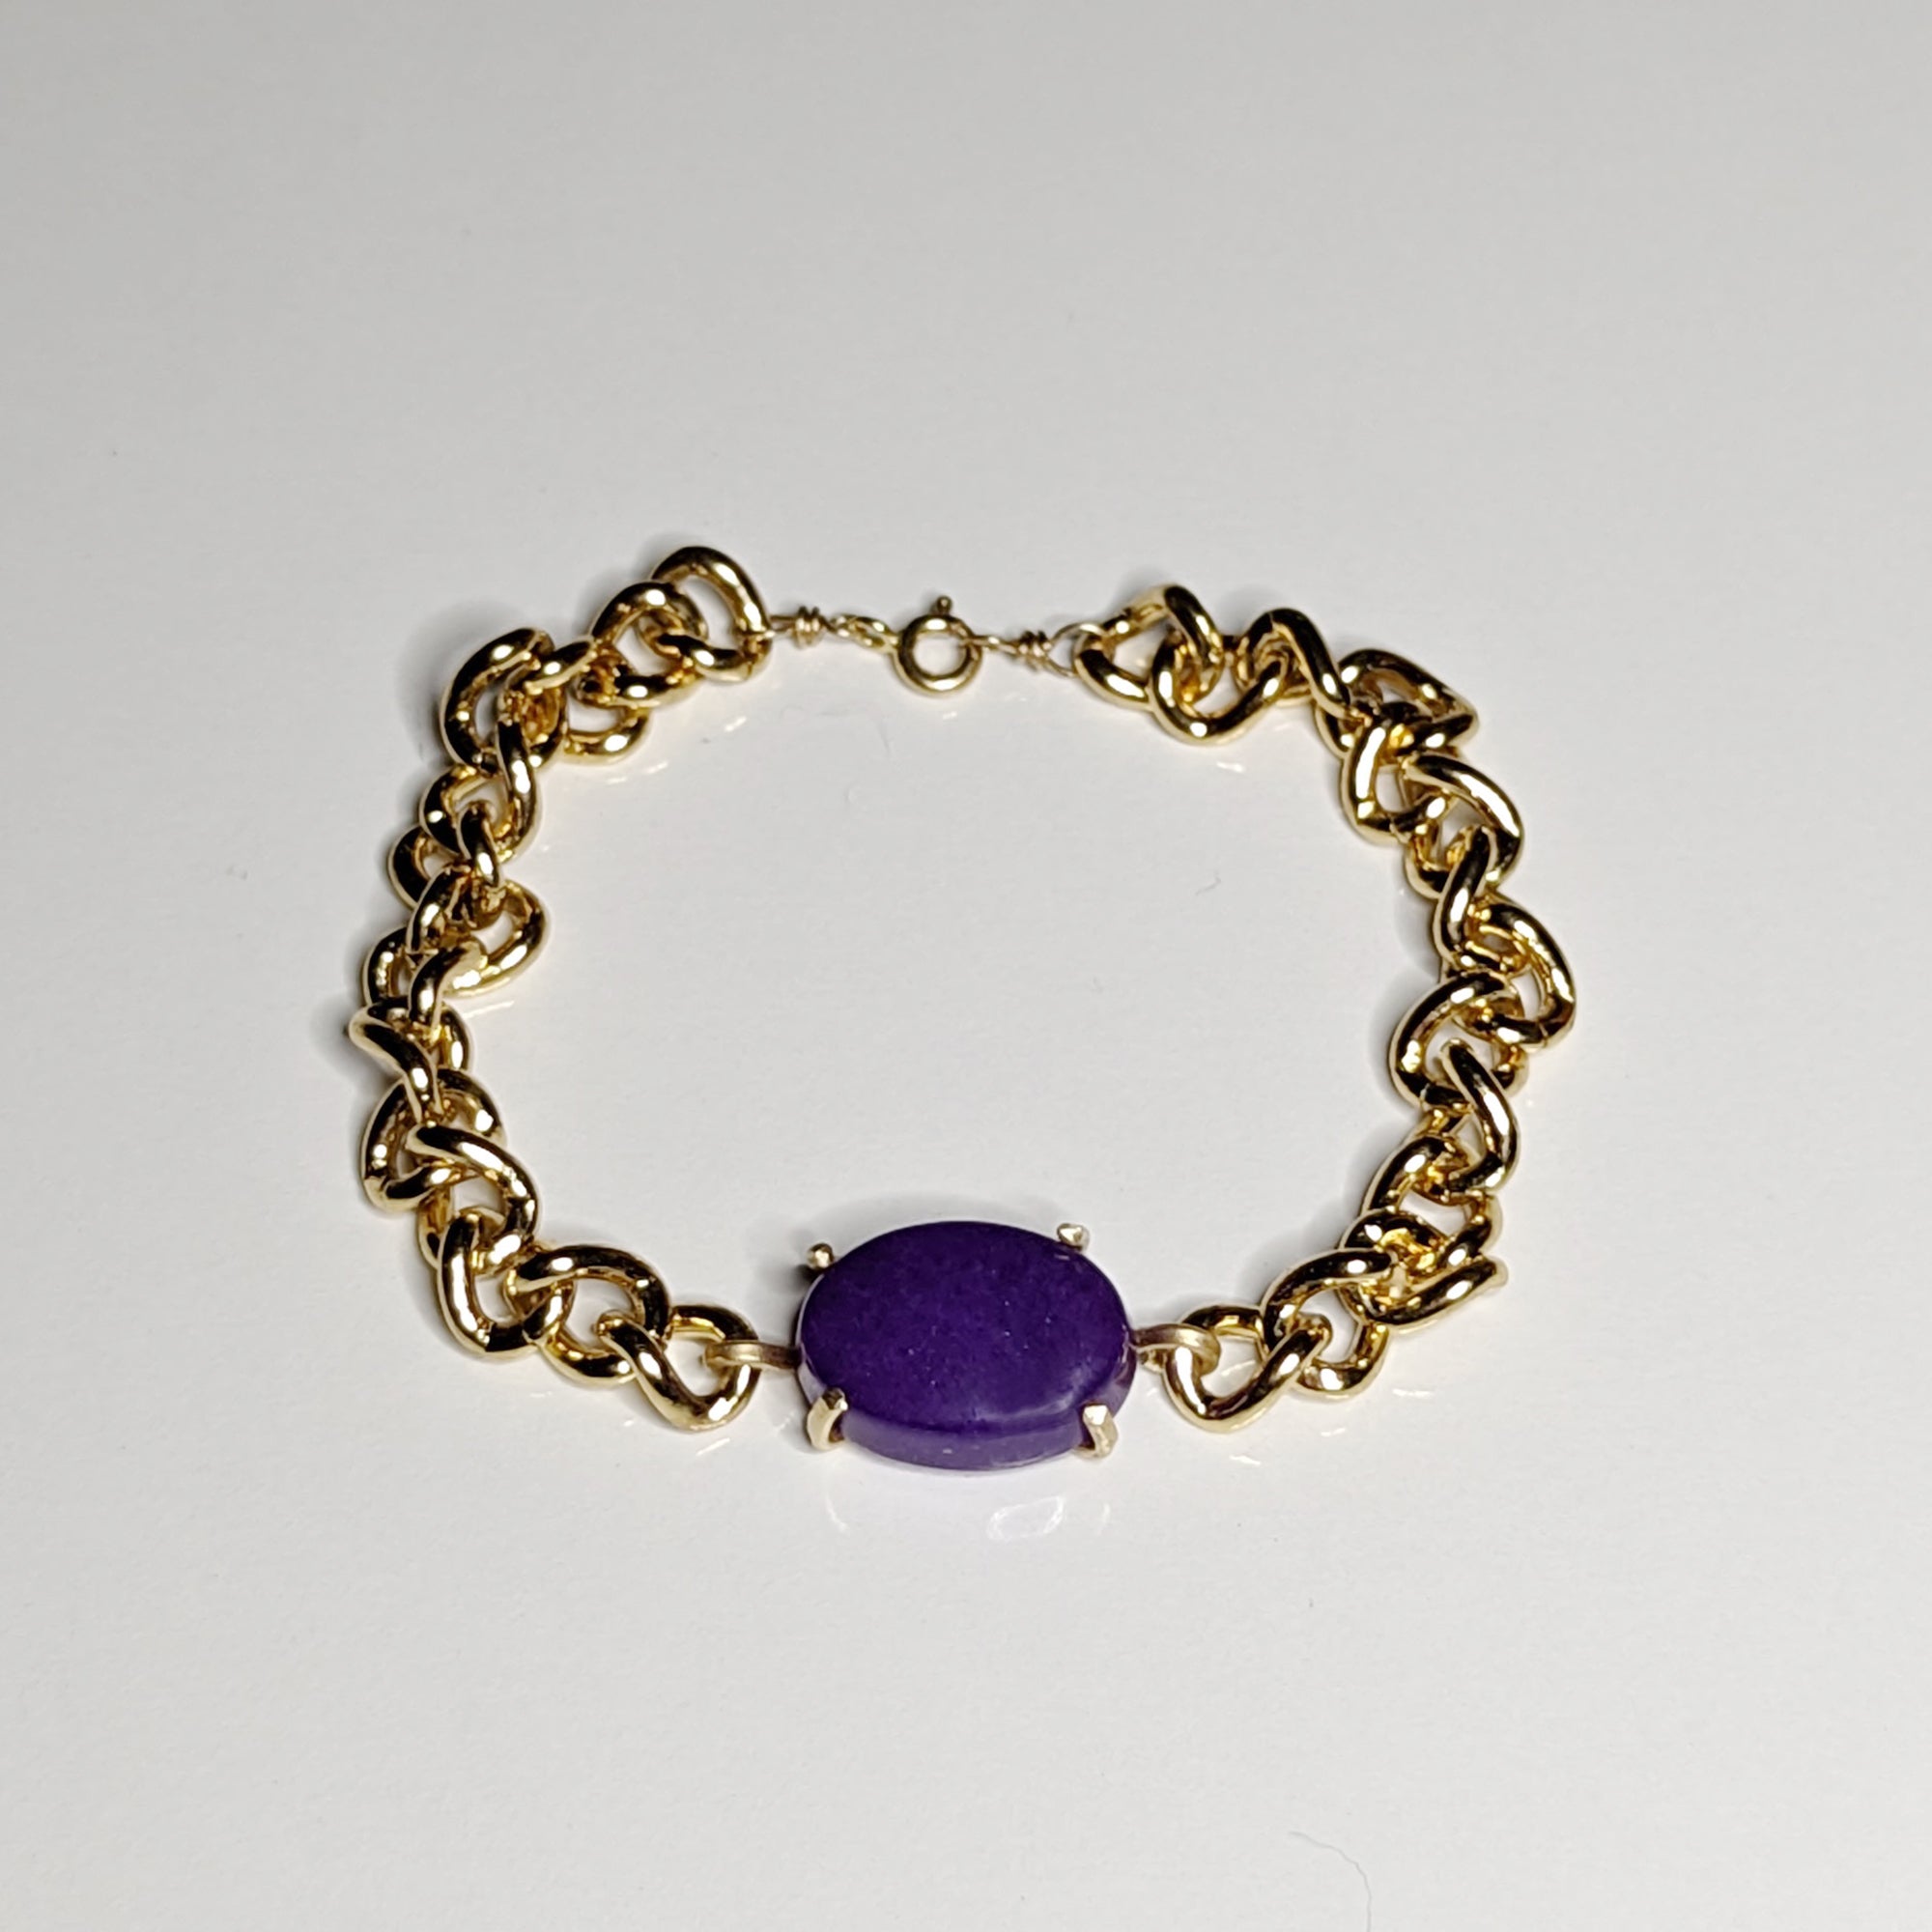 The Purple Jewel Jewel Bracelet